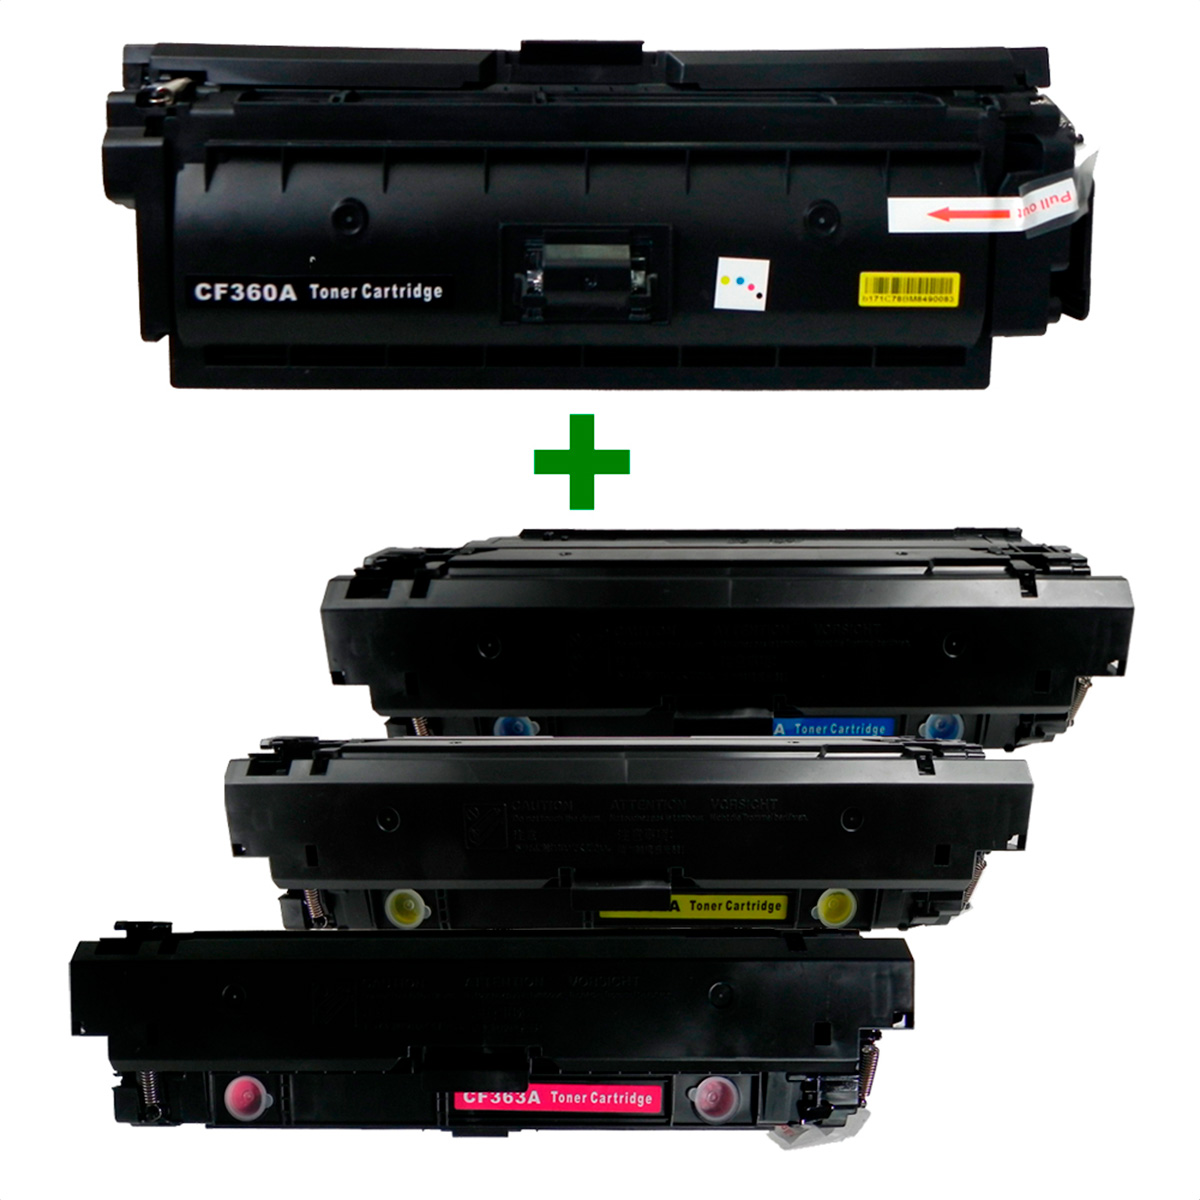 Kit Toner Compatível CF360/1/2/3 508A M501 M506 Preto e Coloridos até 6 mil páginas